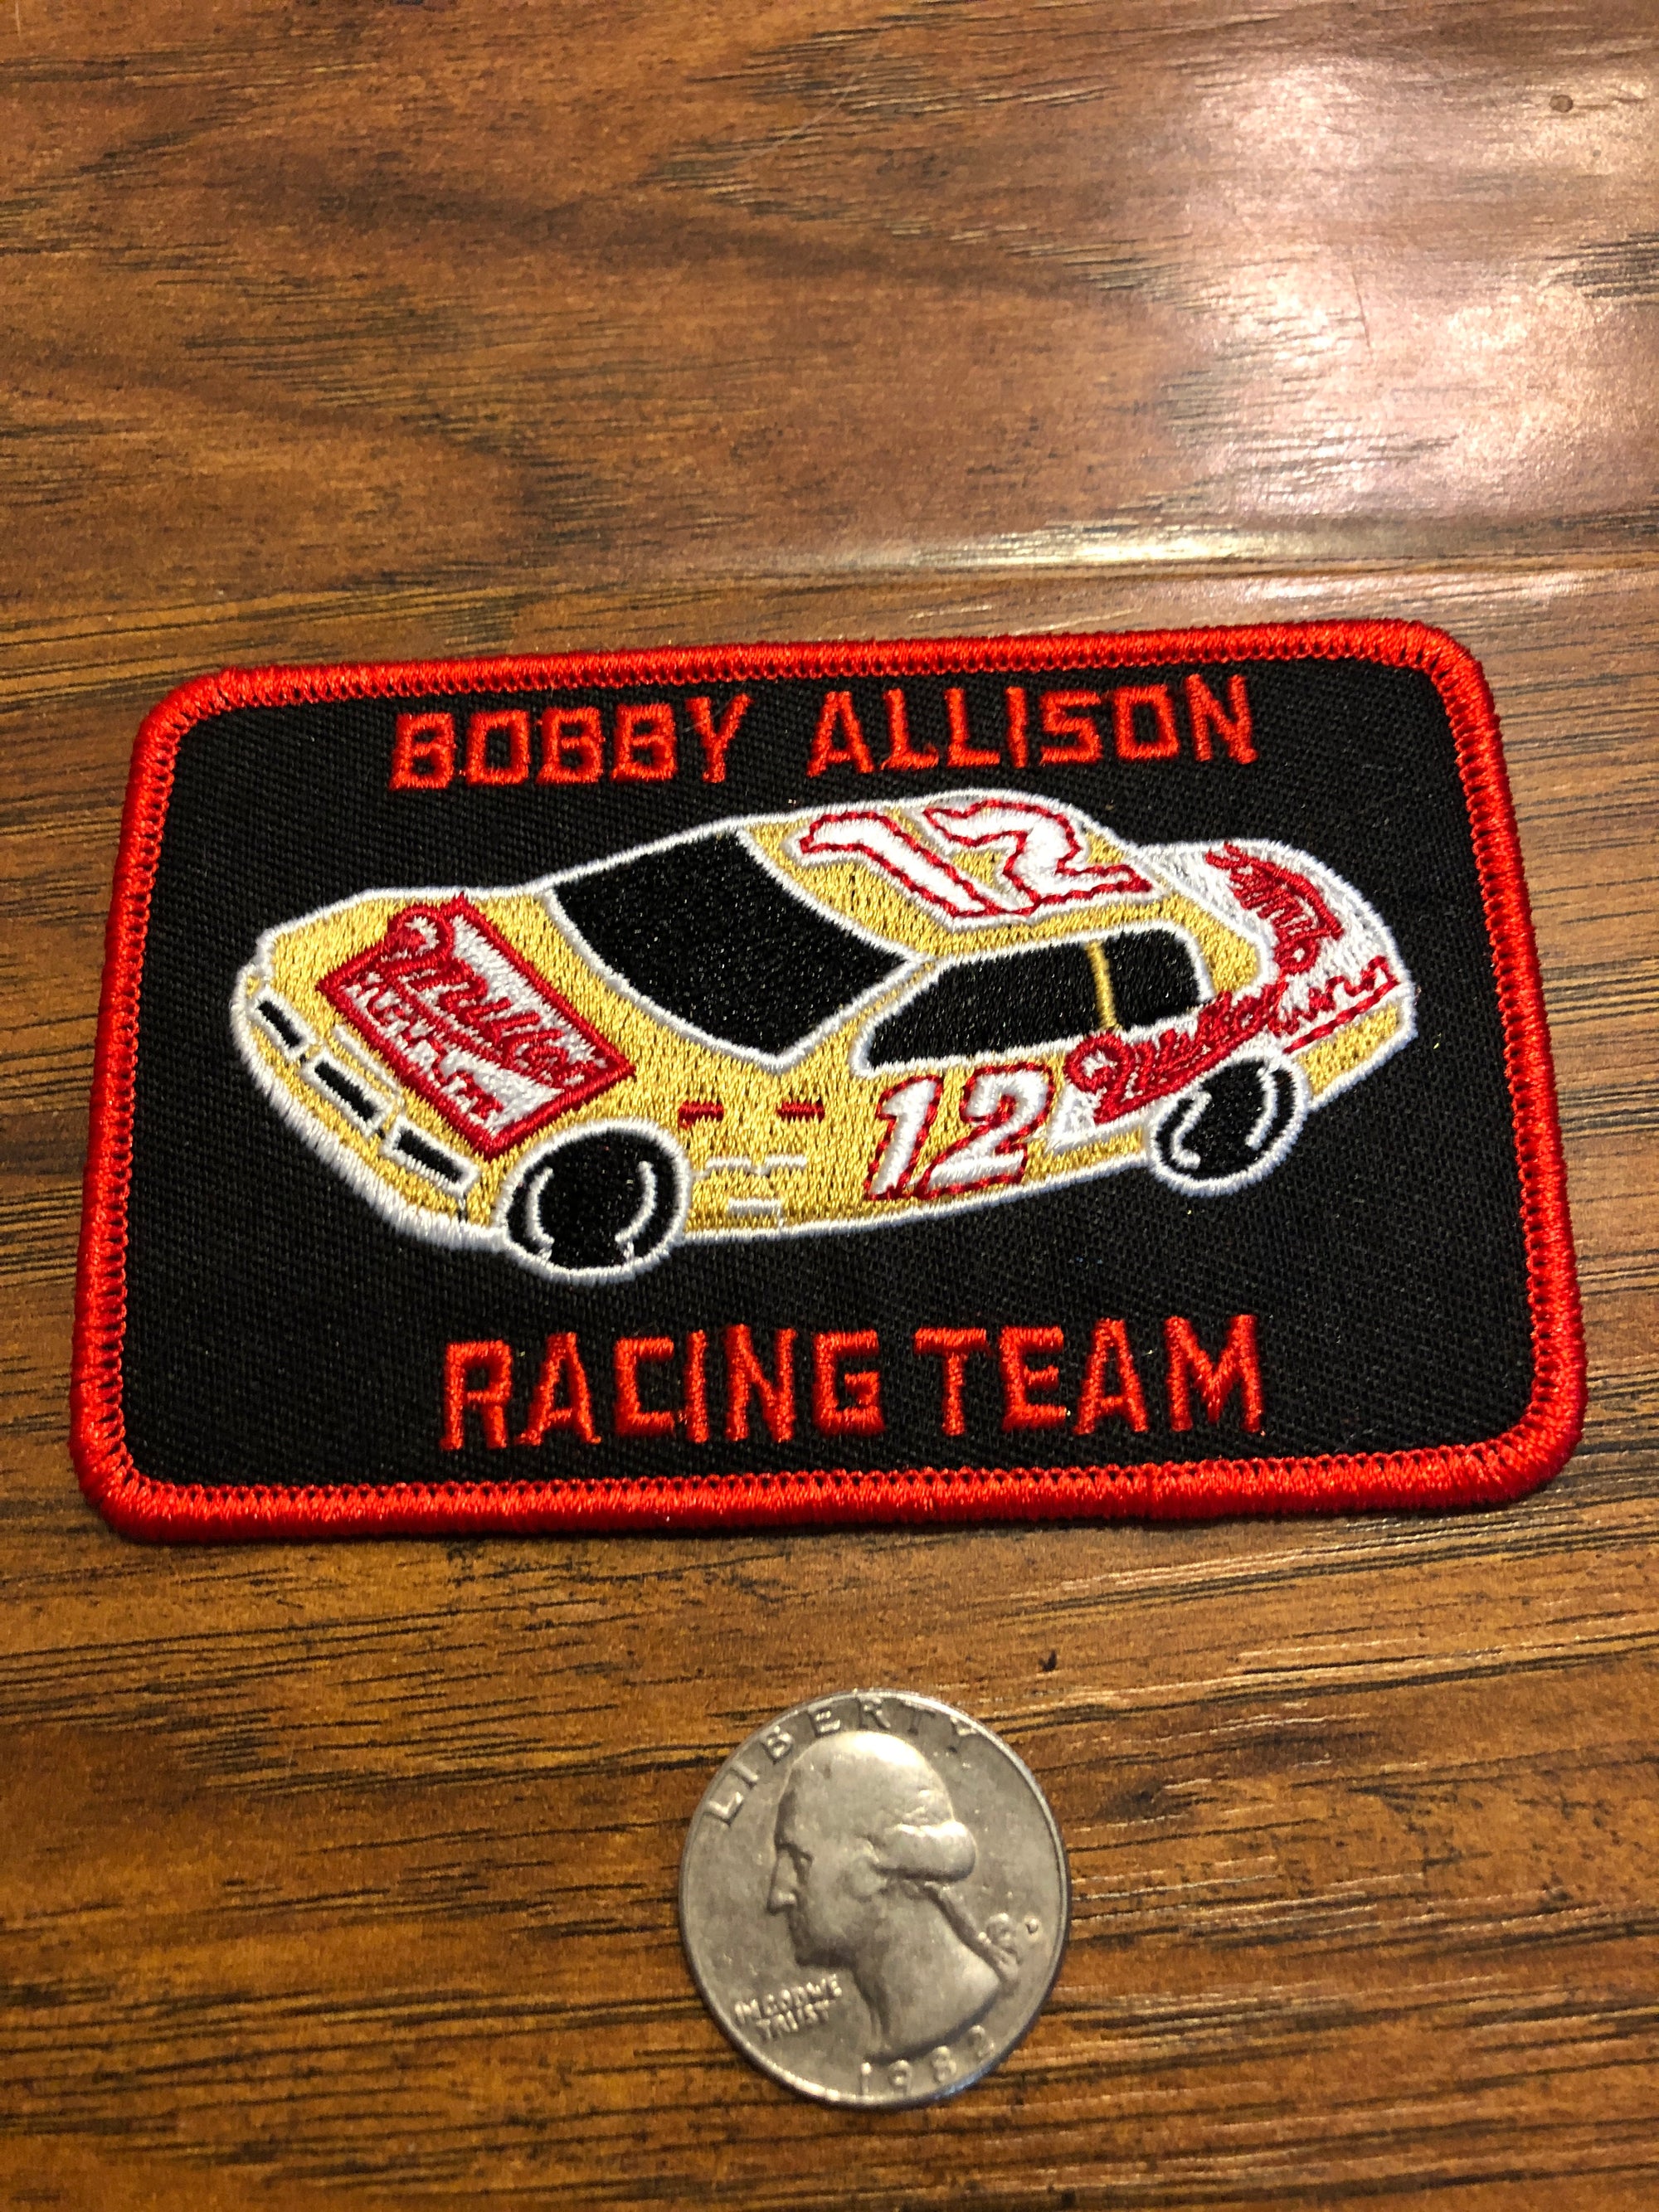 Bobby Allison Racing Team, Race, NASCAR